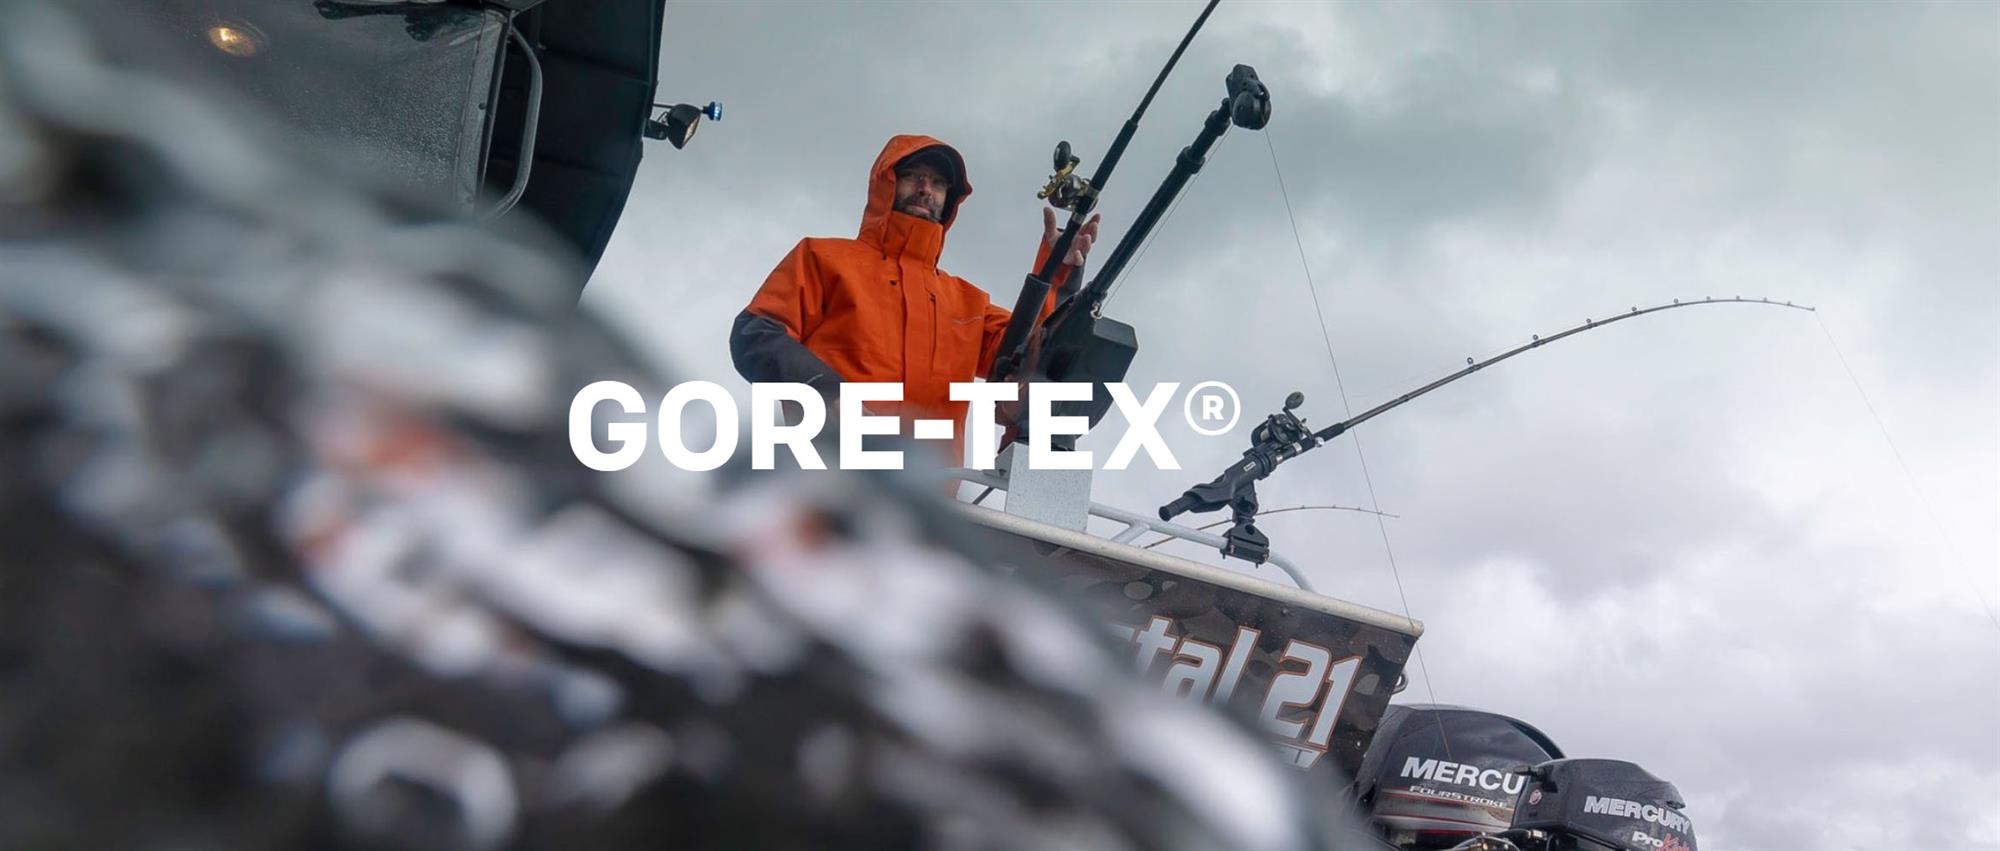 Grundens Buoy X Gore-Tex Bib & Brace